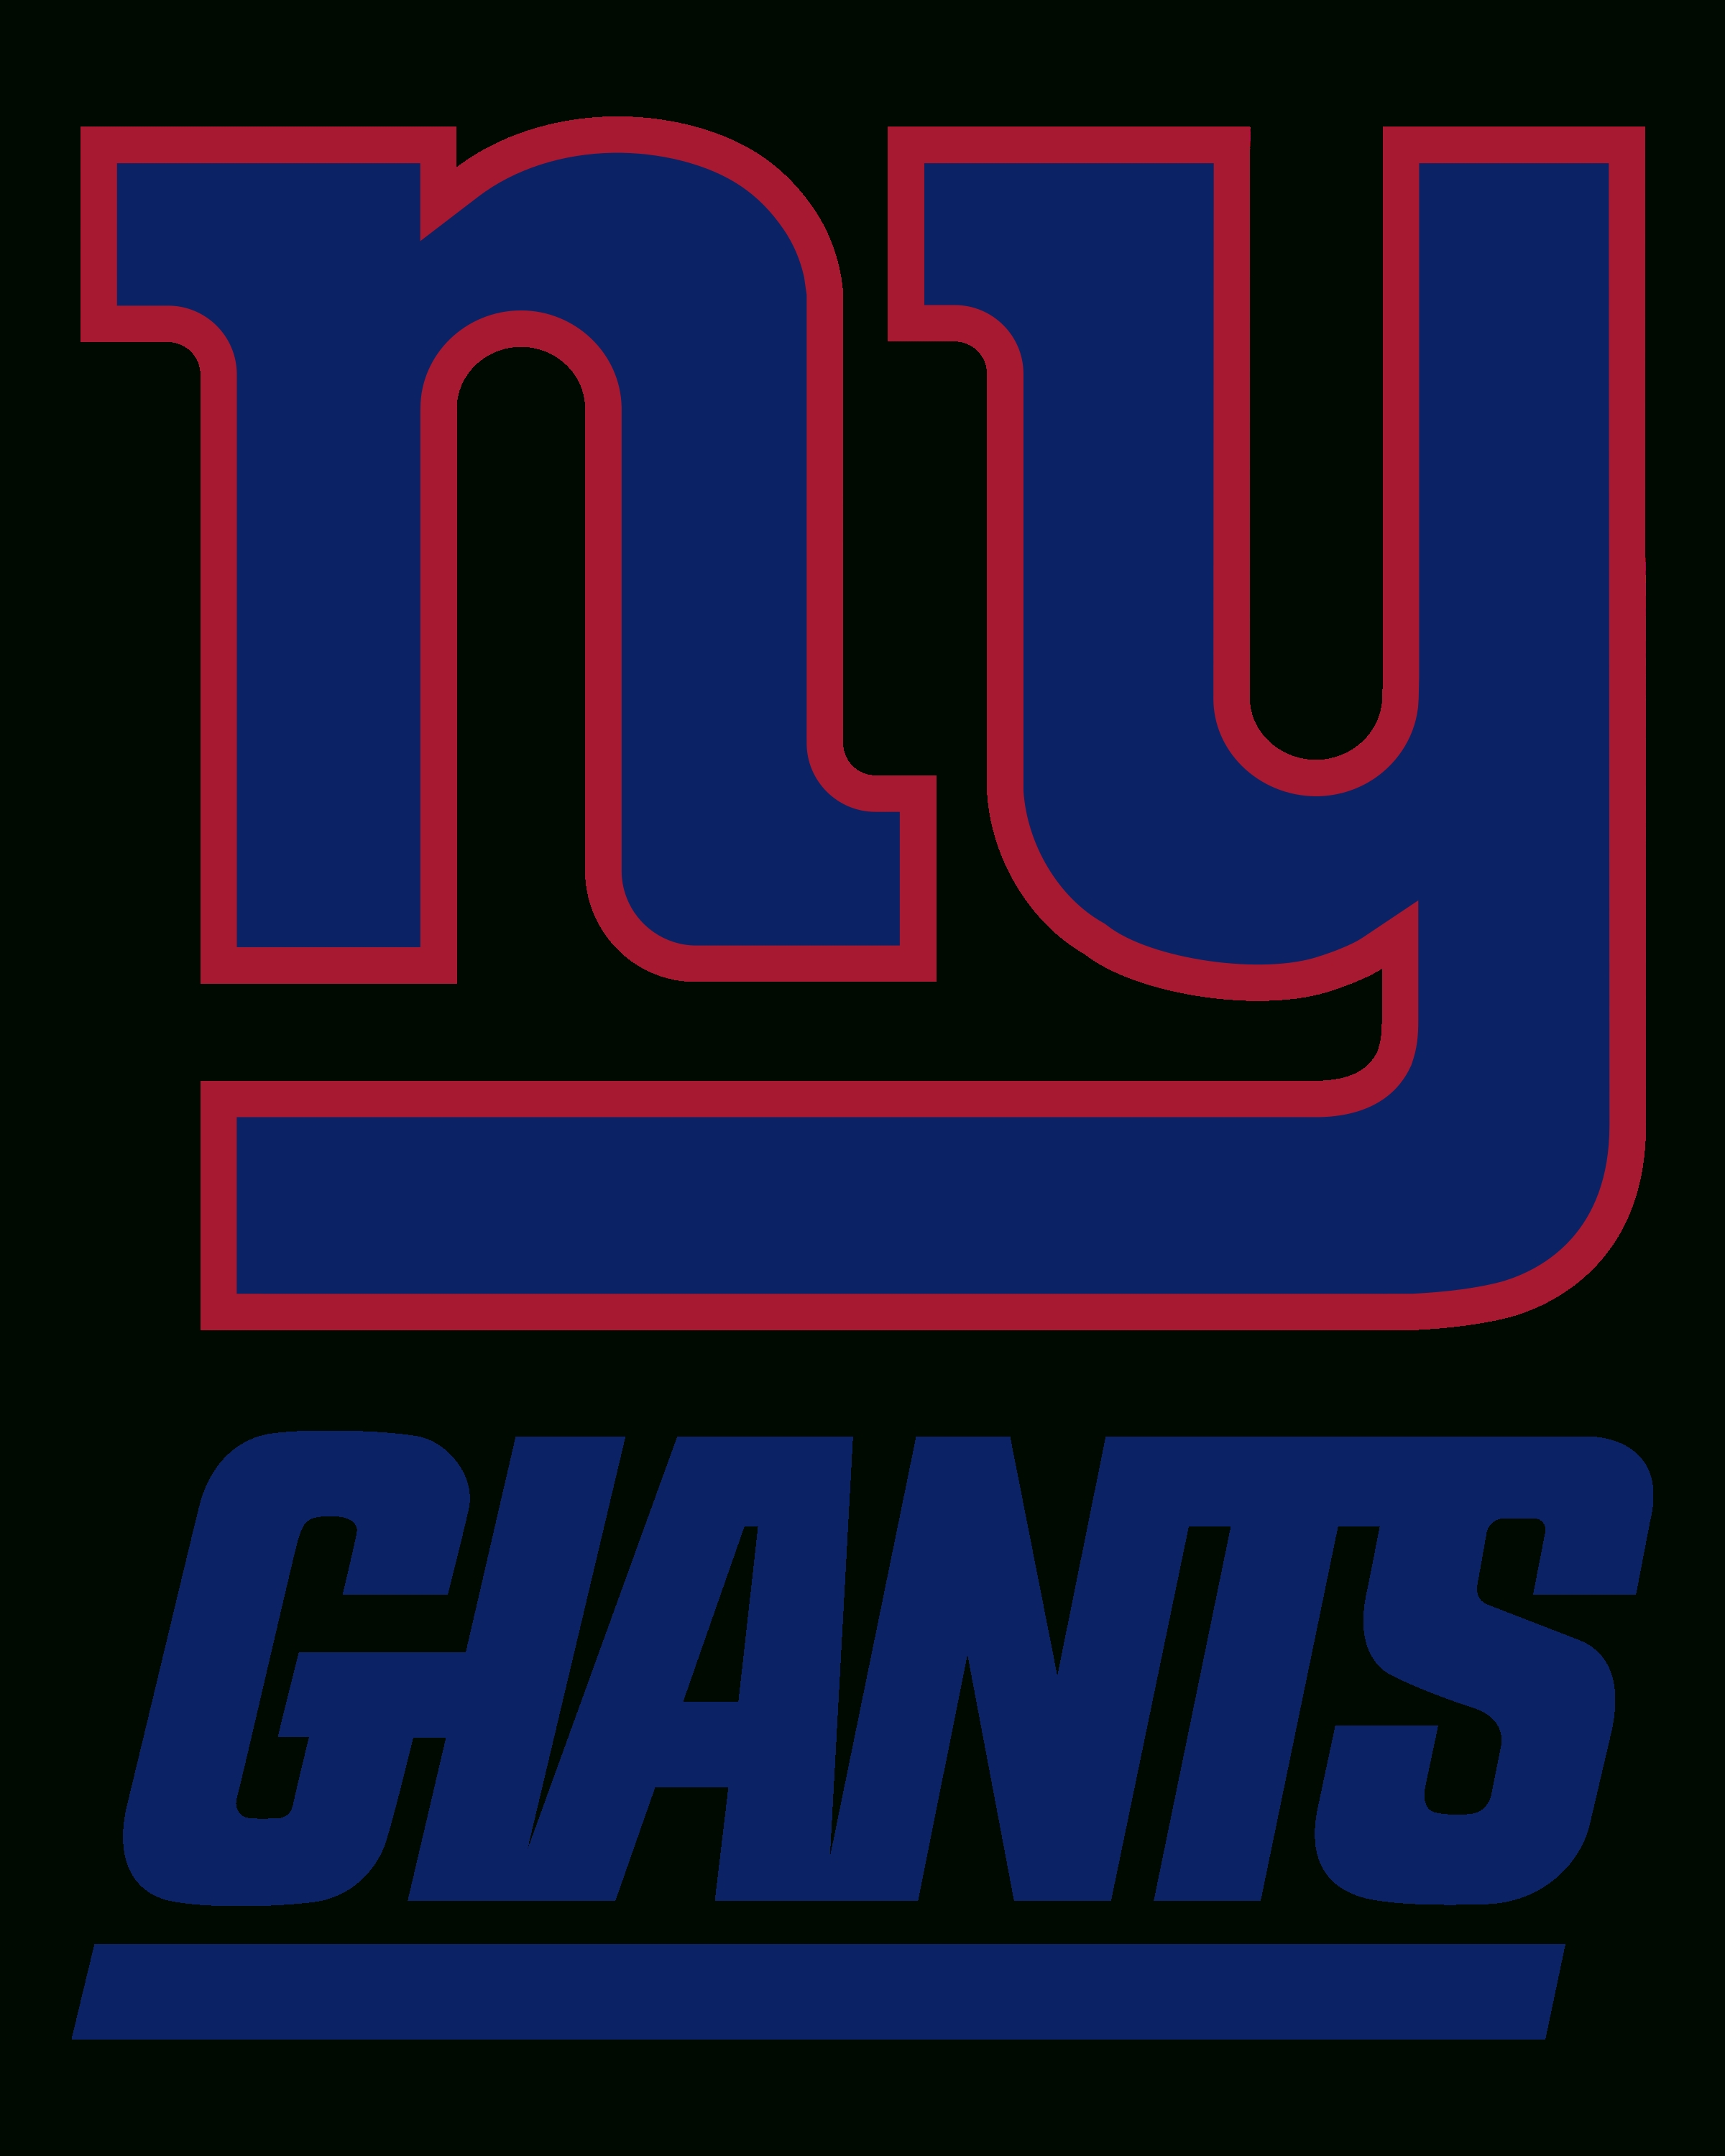 10 Best New York Giants Logo Pics FULL HD 1920×1080 For PC Background 2021